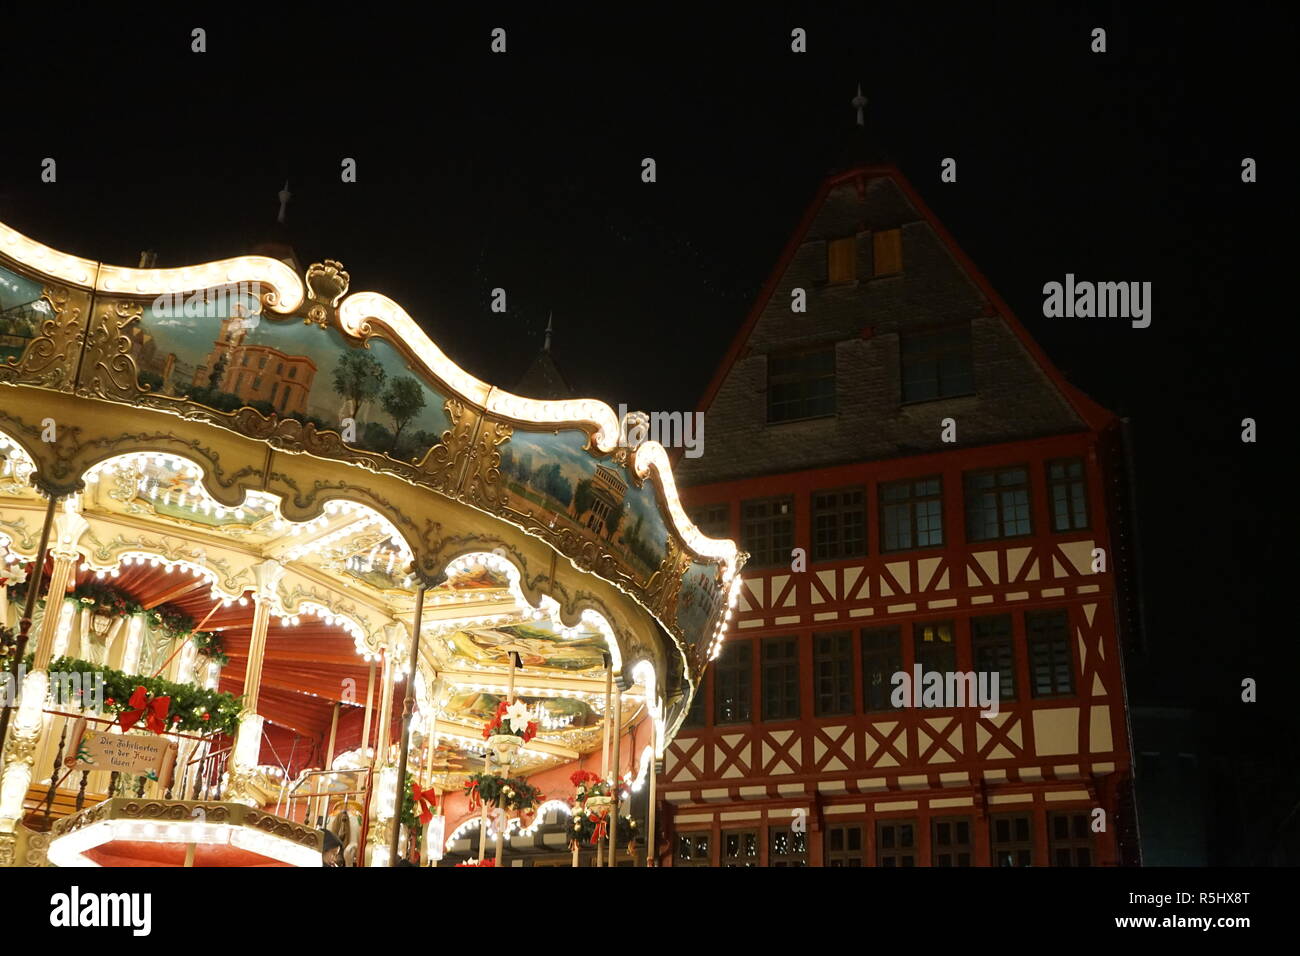 Karussell, Weihnachtsmarkt, Frankfurt am Main, Alemania Foto de stock